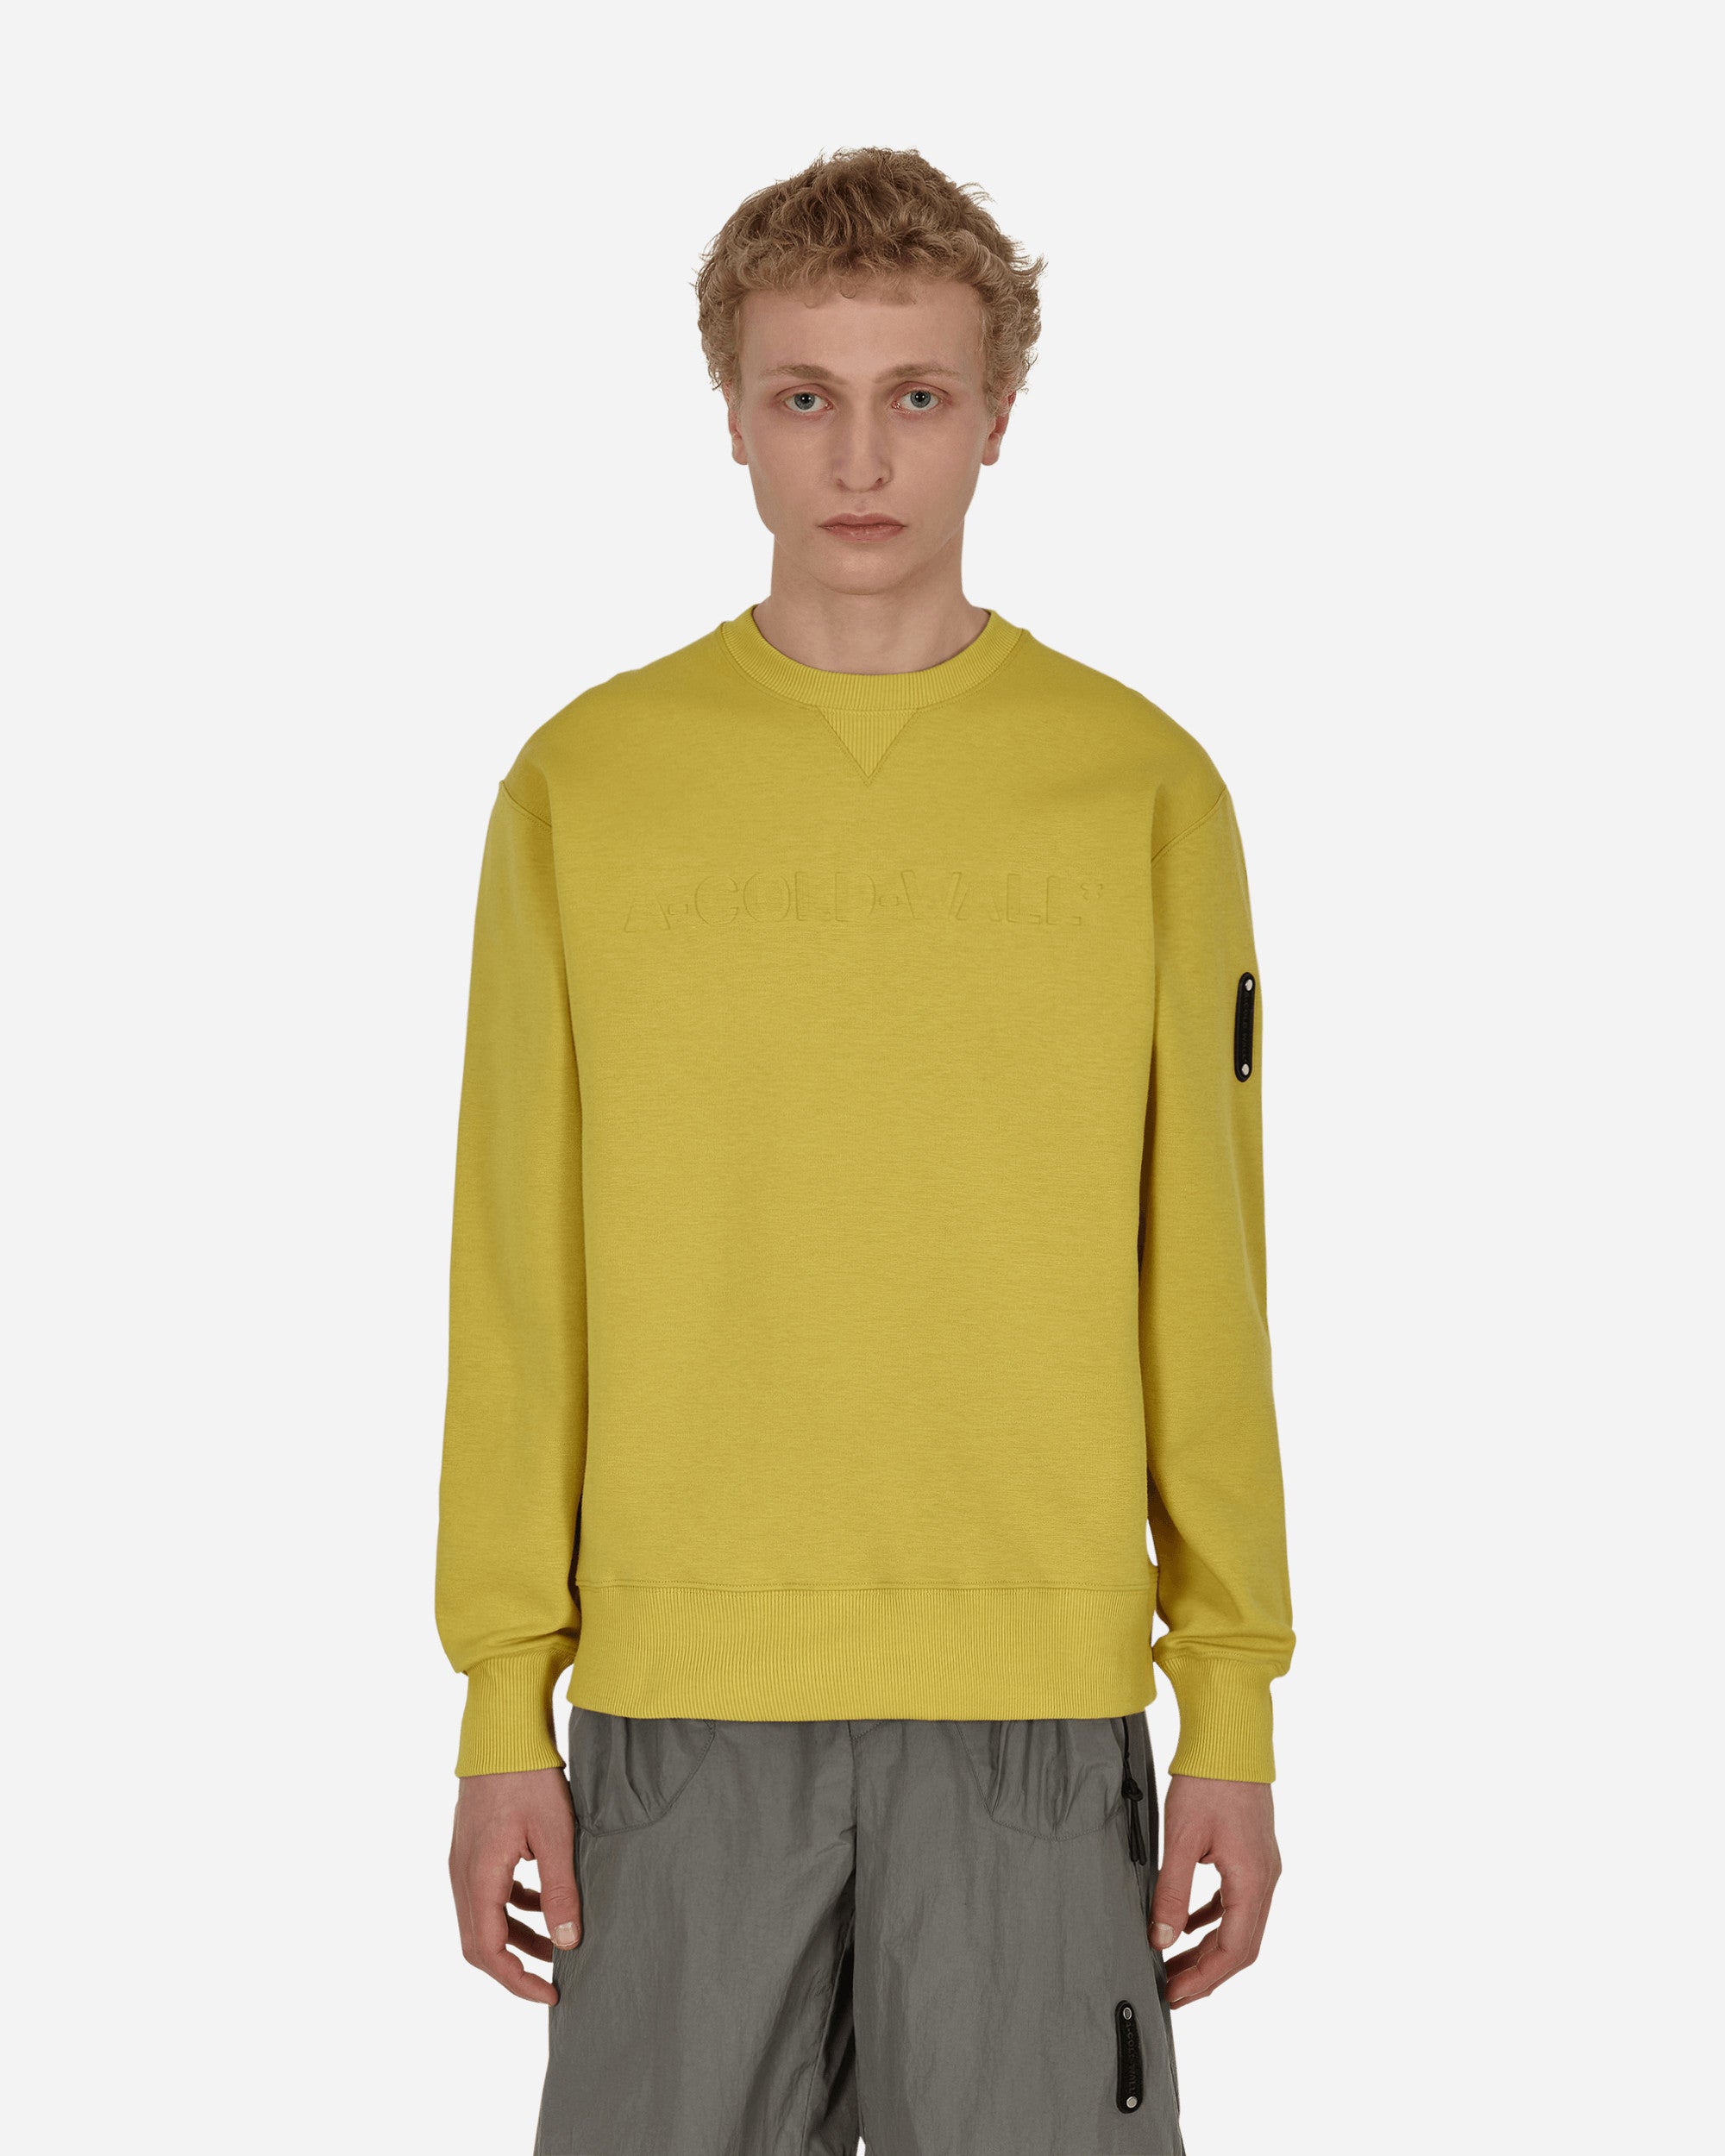 Gradient Crewneck Sweatshirt Yellow